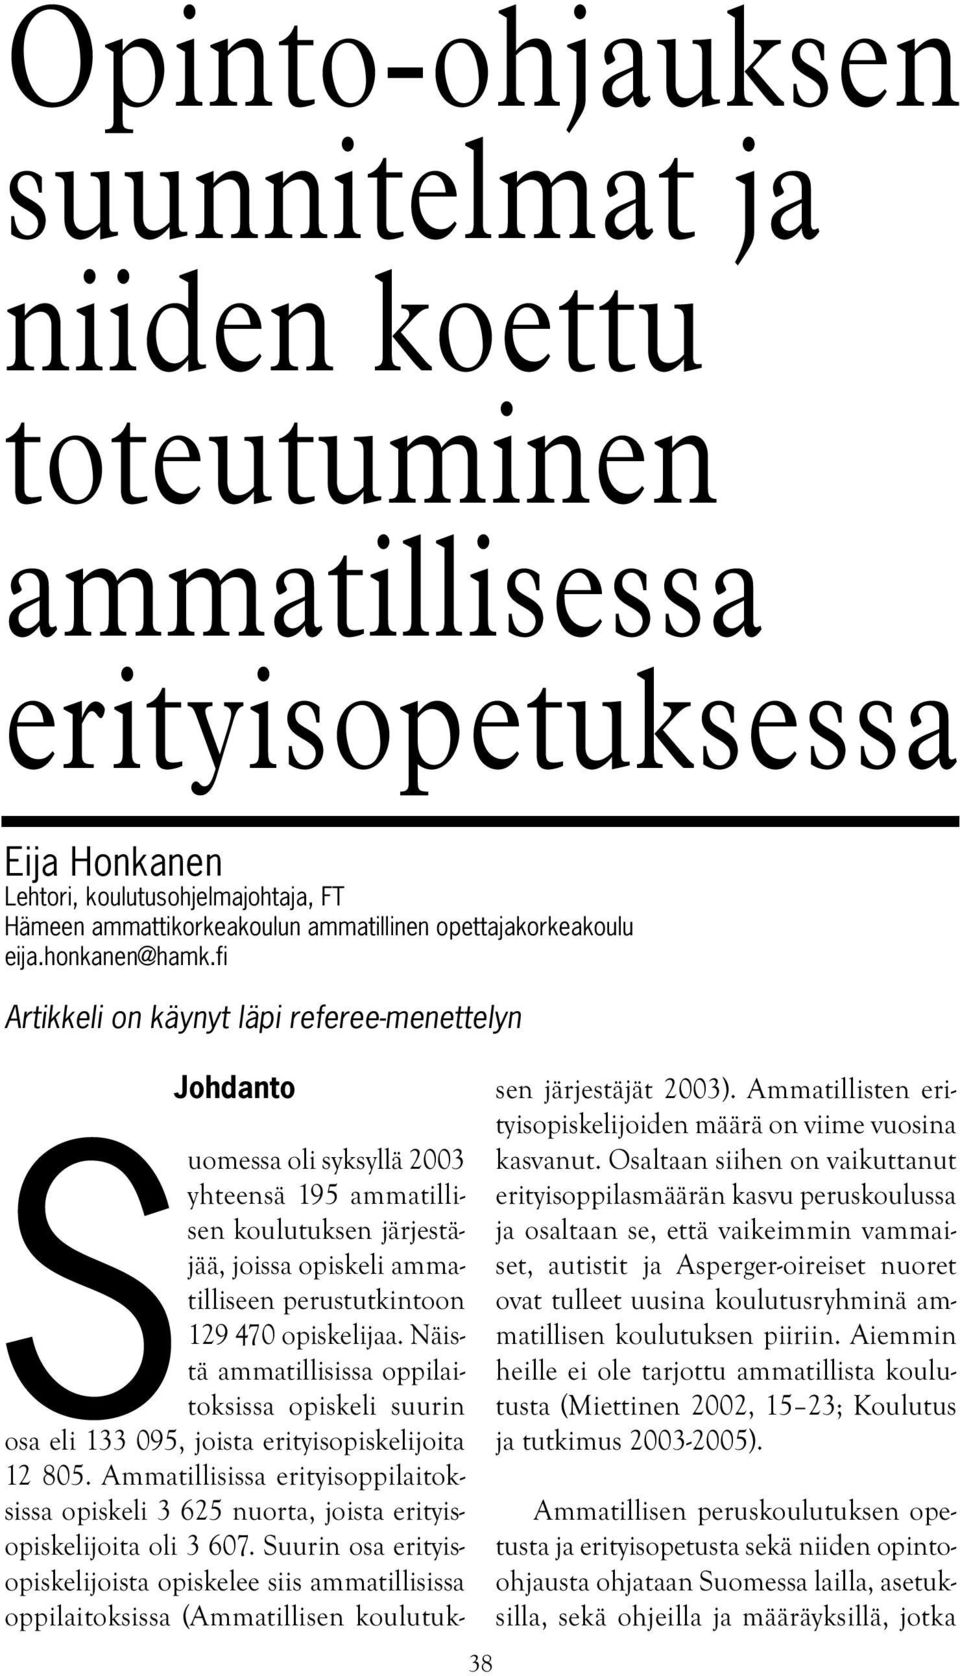 fi Artikkeli on käynyt läpi referee-menettelyn Johdanto 38 Suomessa oli syksyllä 2003 yhteensä 195 ammatillisen koulutuksen järjestäjää, joissa opiskeli ammatilliseen perustutkintoon 129 470